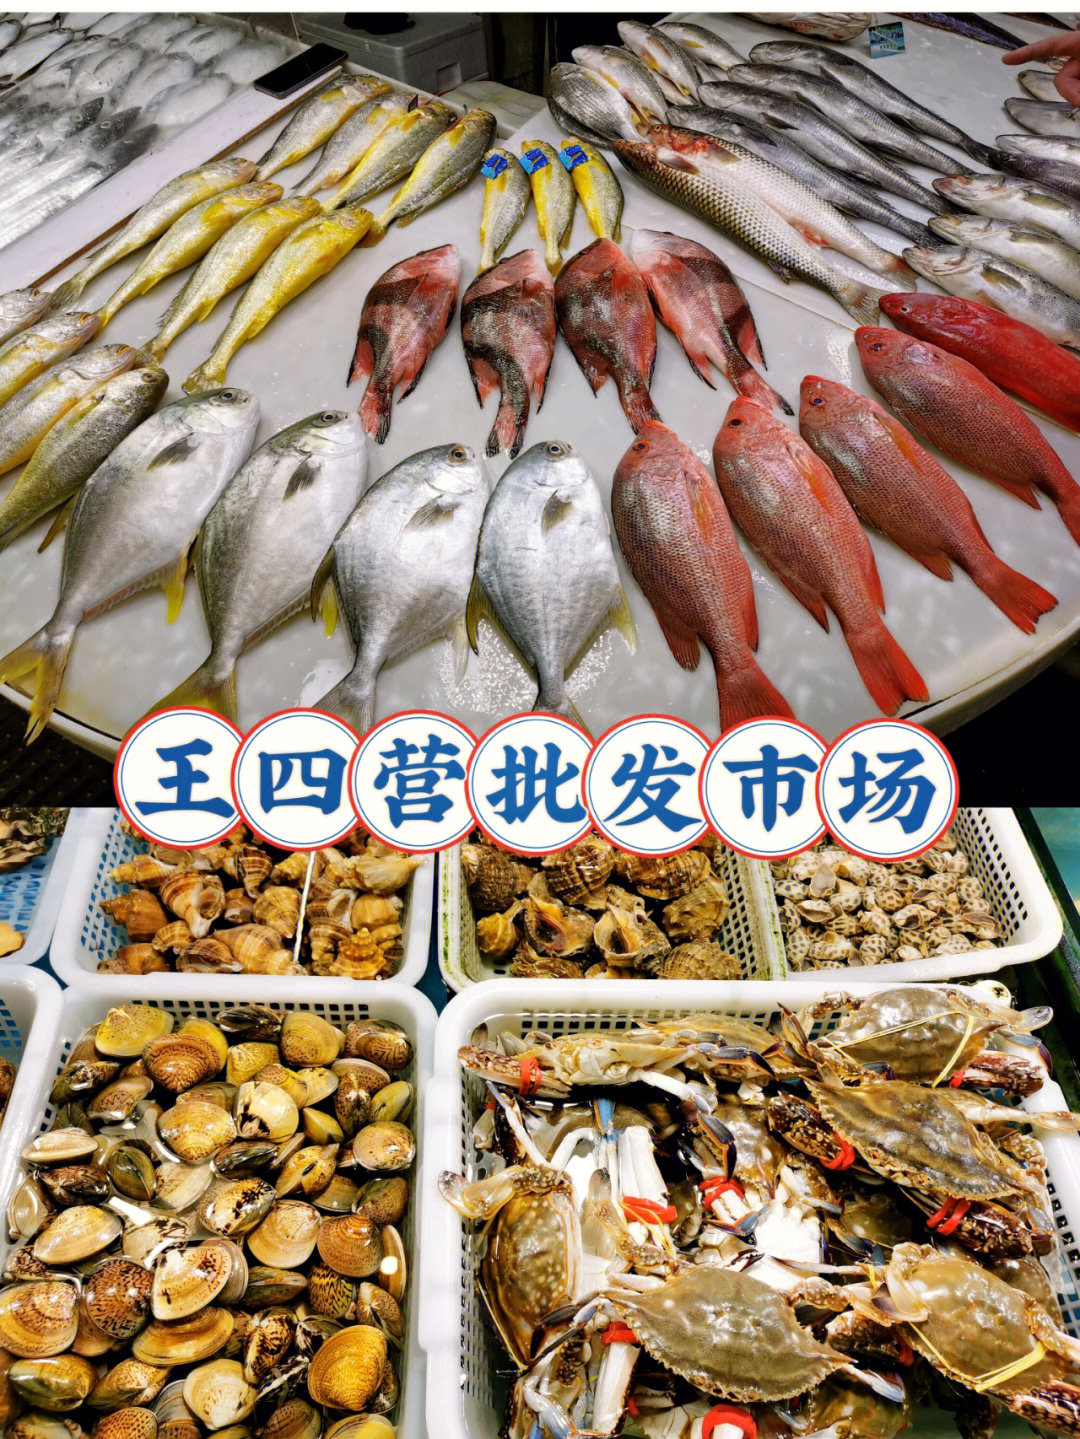 王四营地区最大的批发市场其中最有名的是市场里的海鲜批发所以h很多